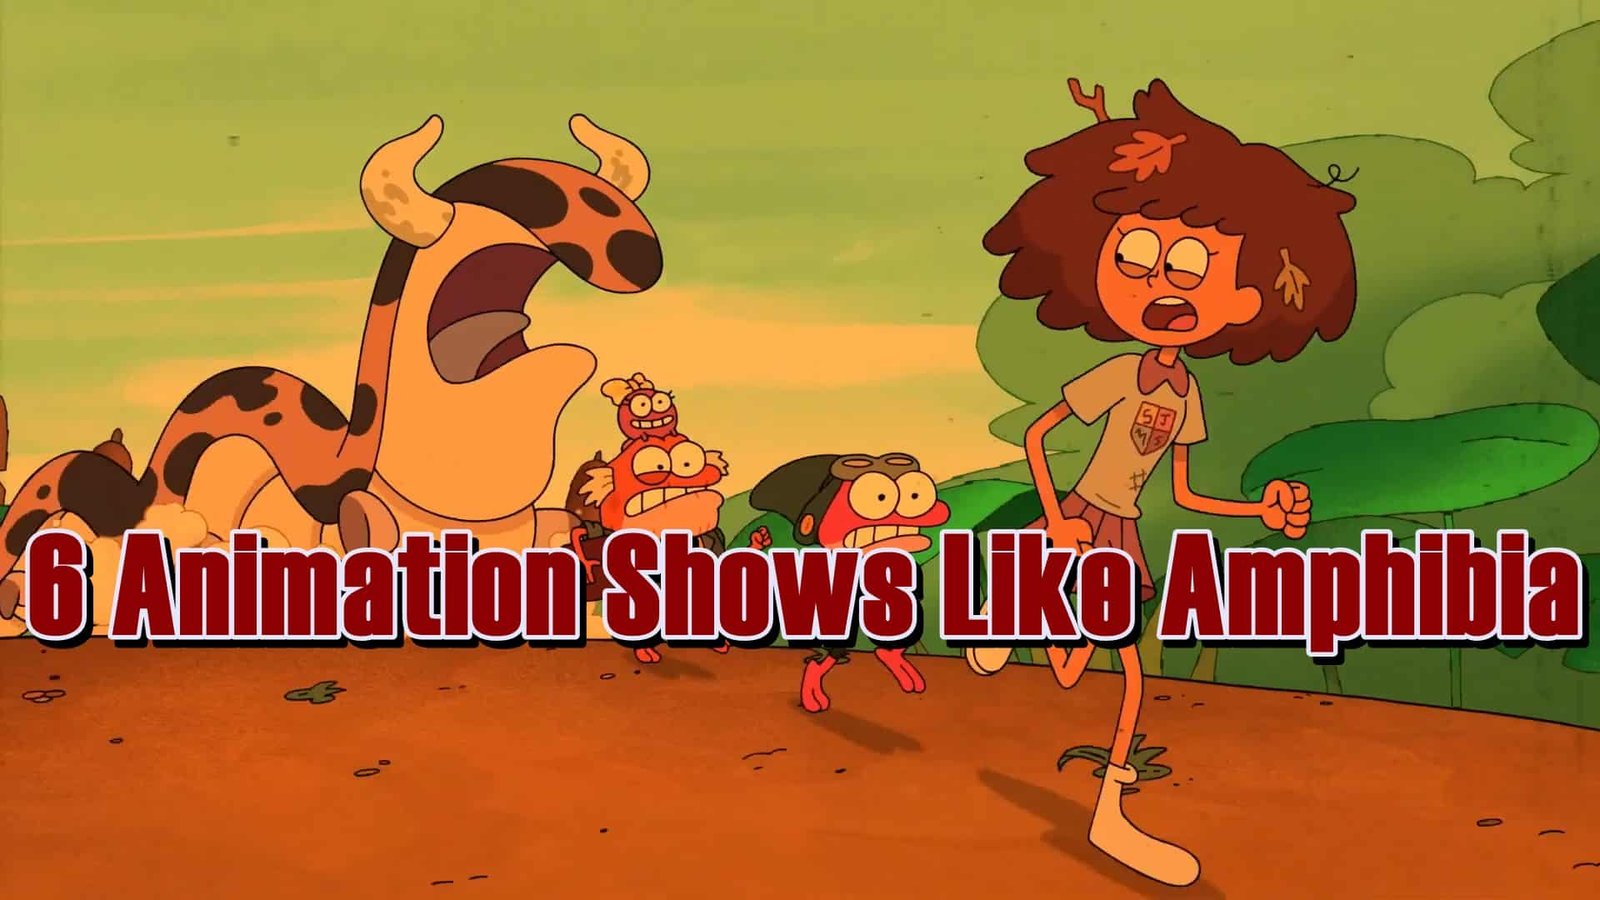 Show Like Amphibia 6 Animation Shows Like Amphibia